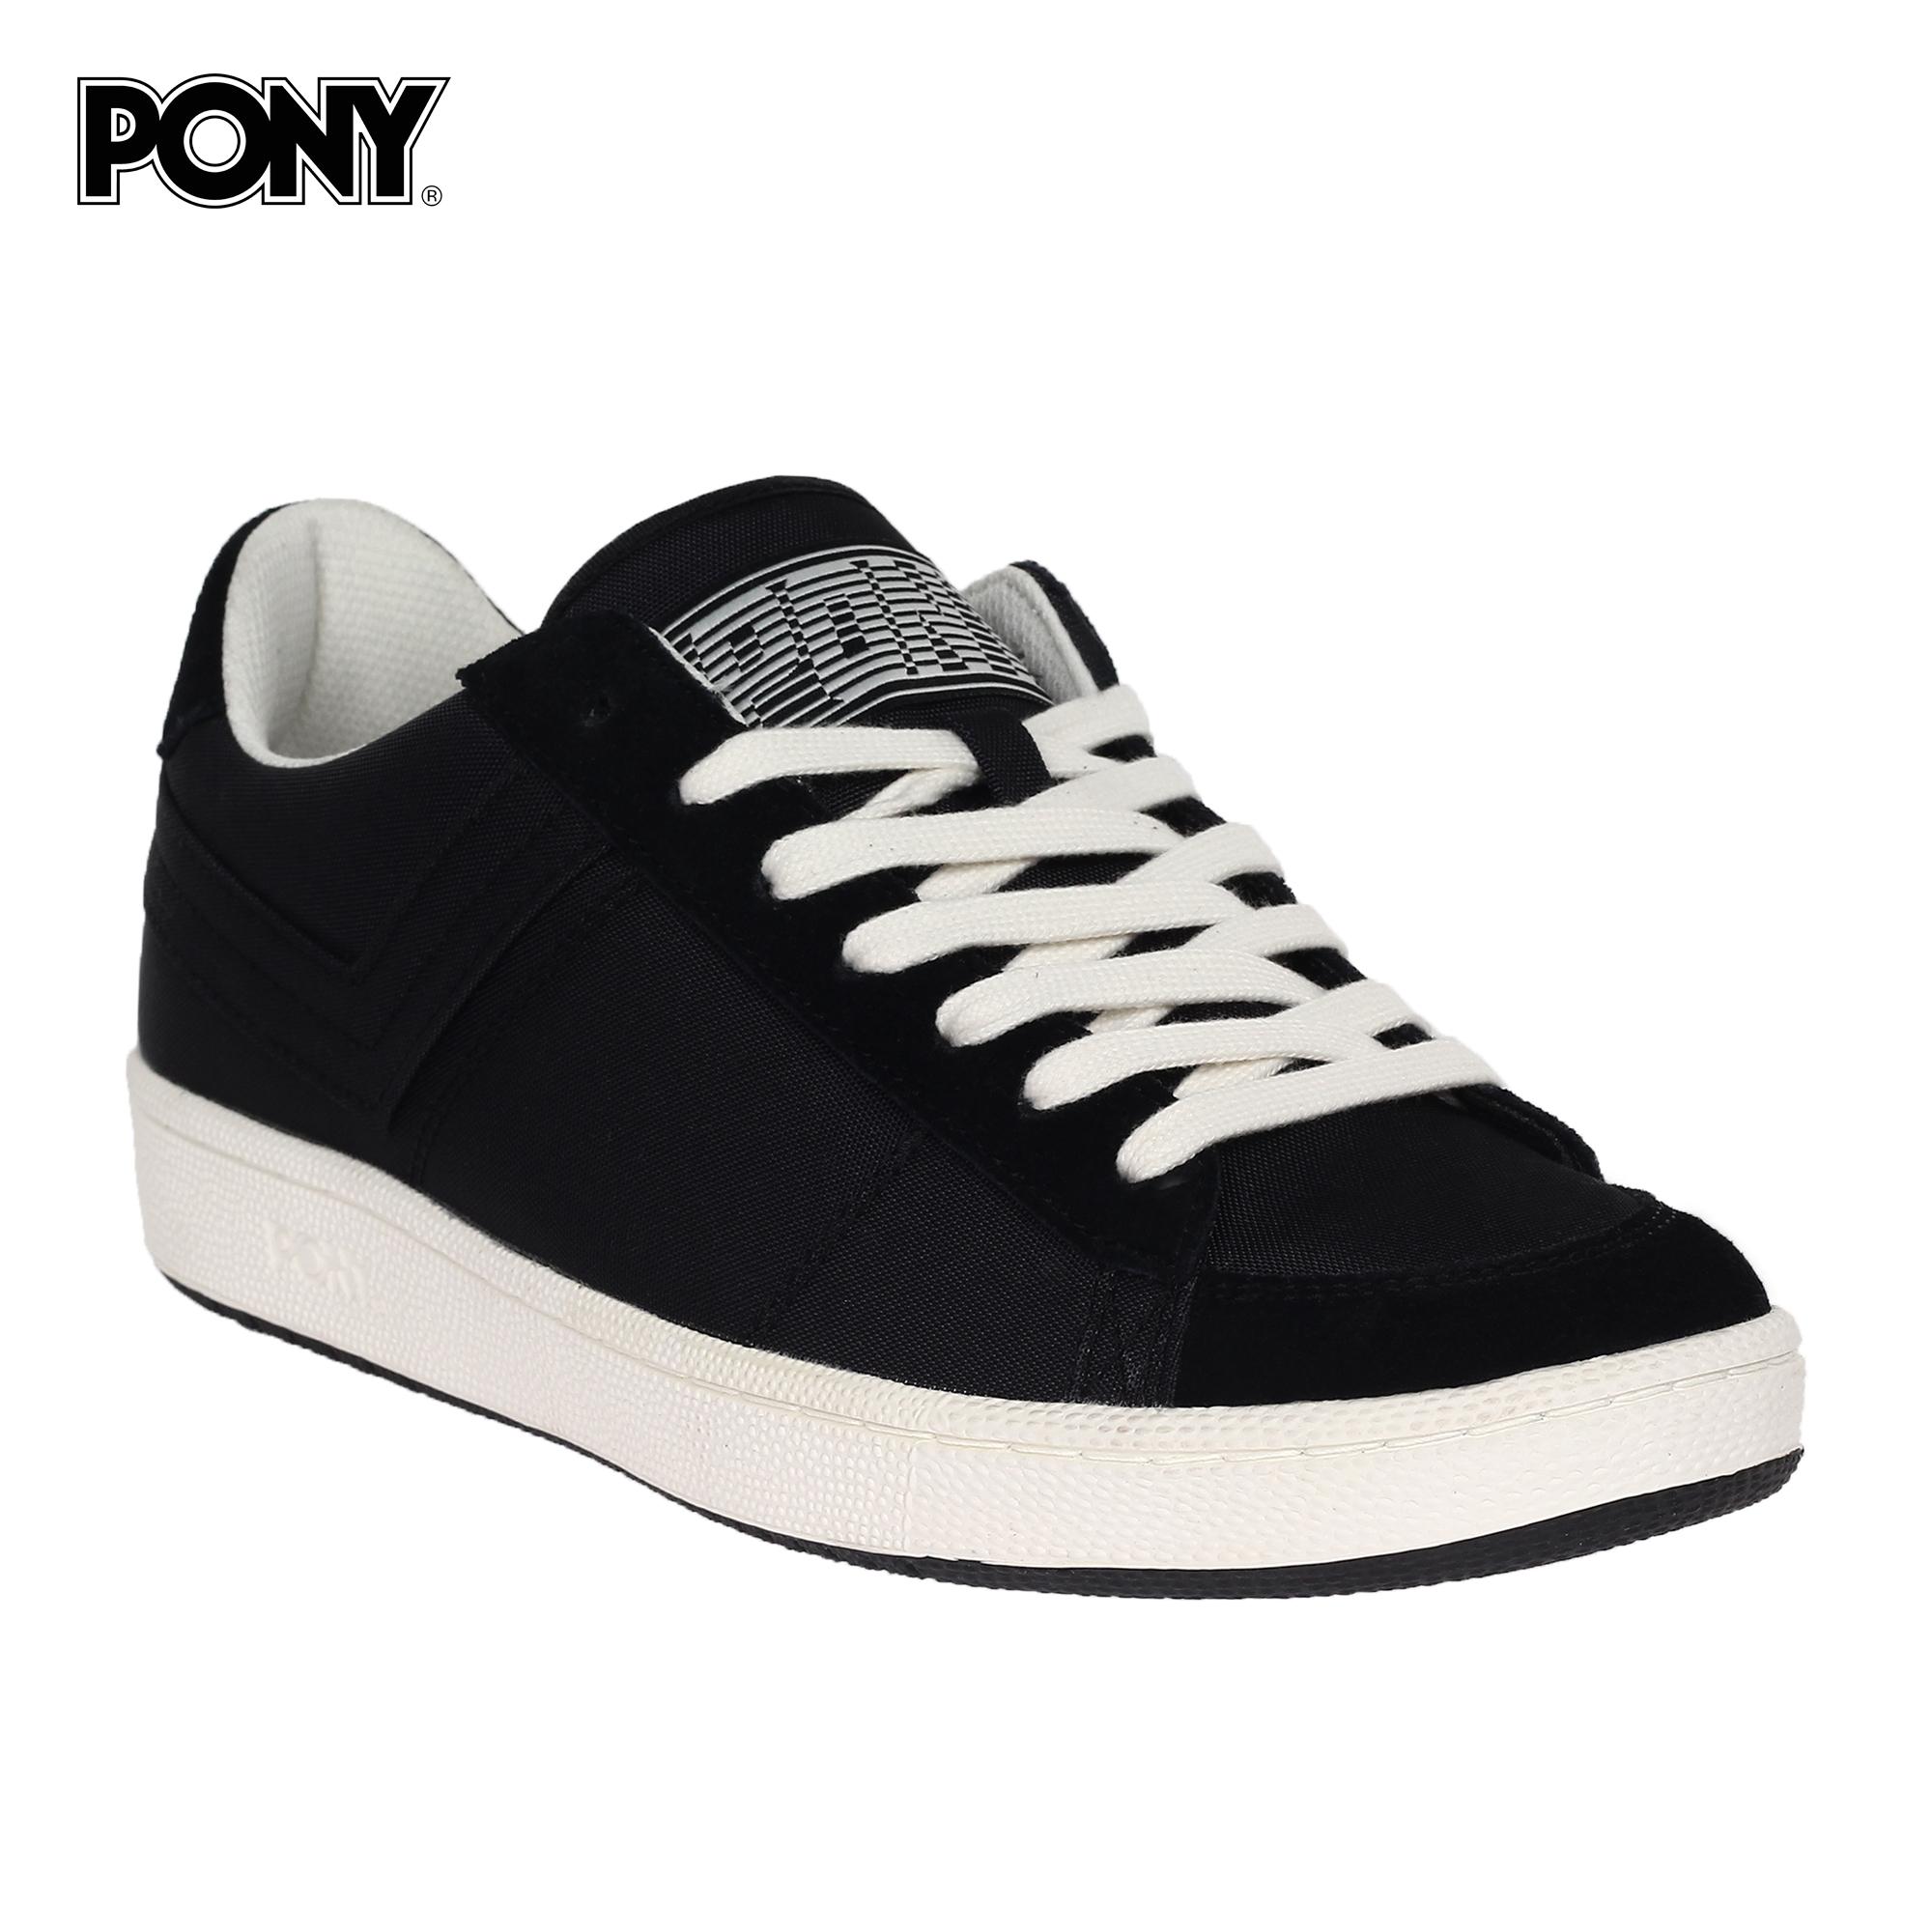 pony sneakers shop online